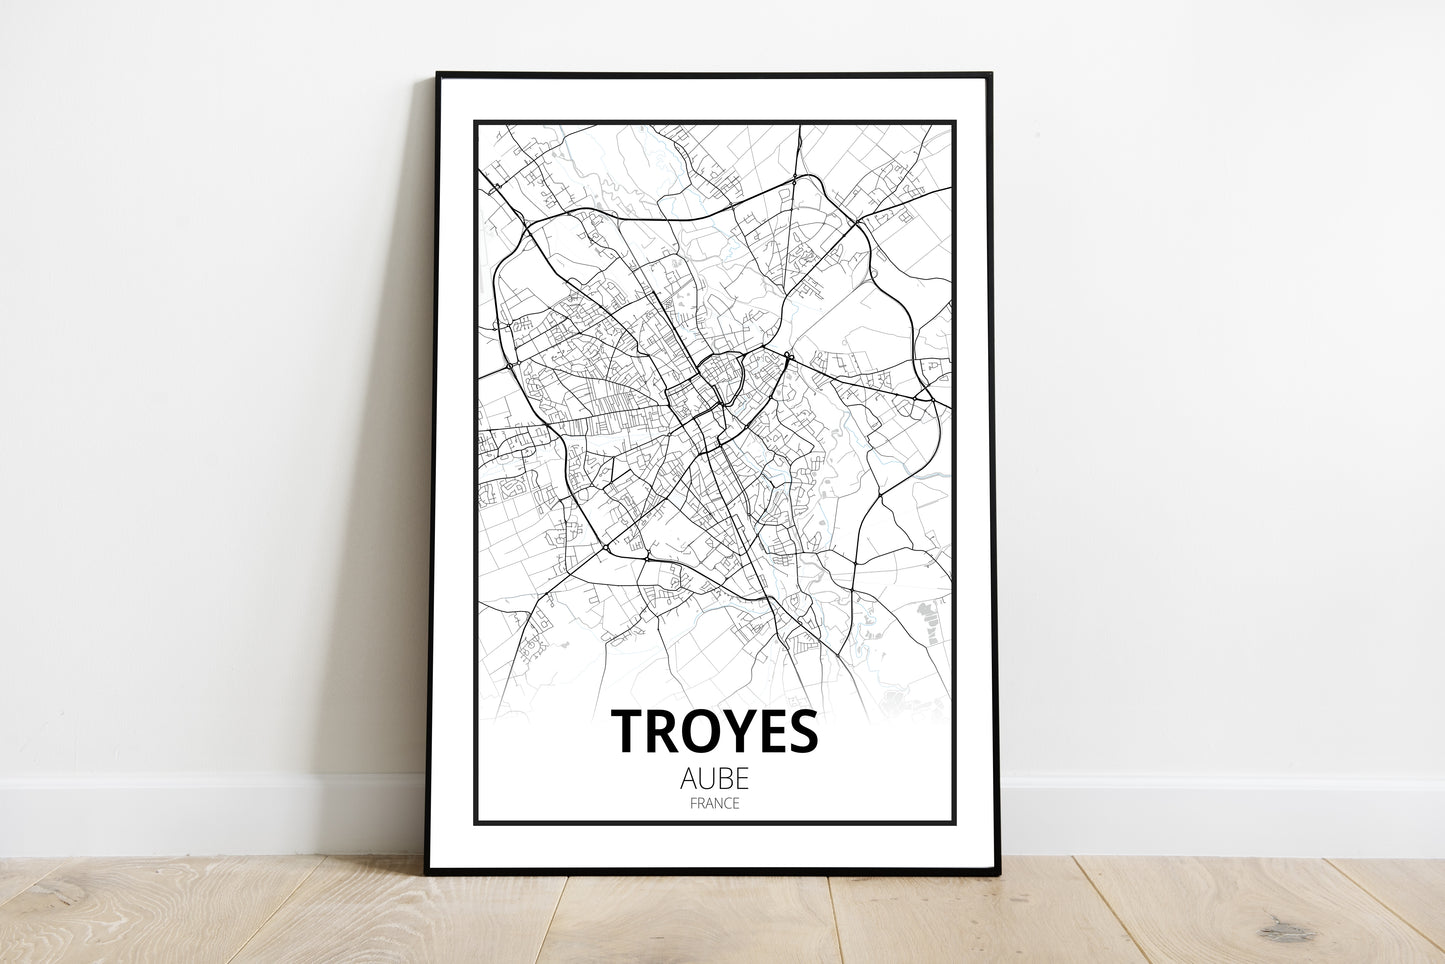 Troyes - Aube